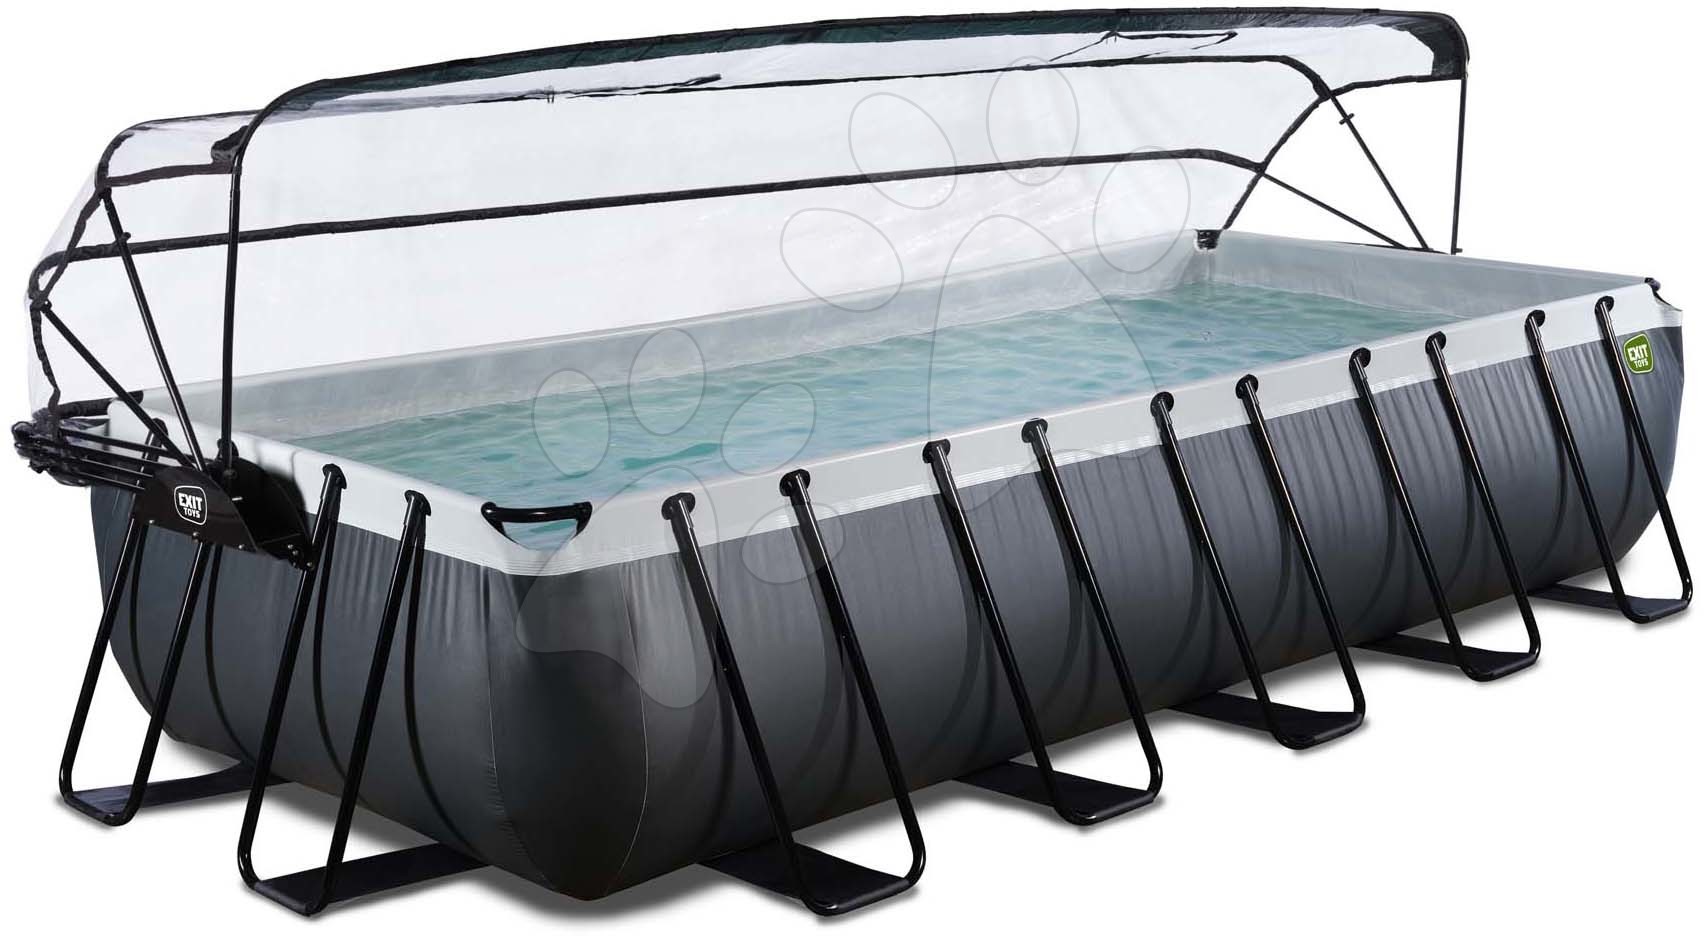 Bazén s krytem pískovou filtrací a tepelným čerpadlem Black Leather pool Exit Toys ocelová konstrukce 540*250*100 cm černý od 6 let